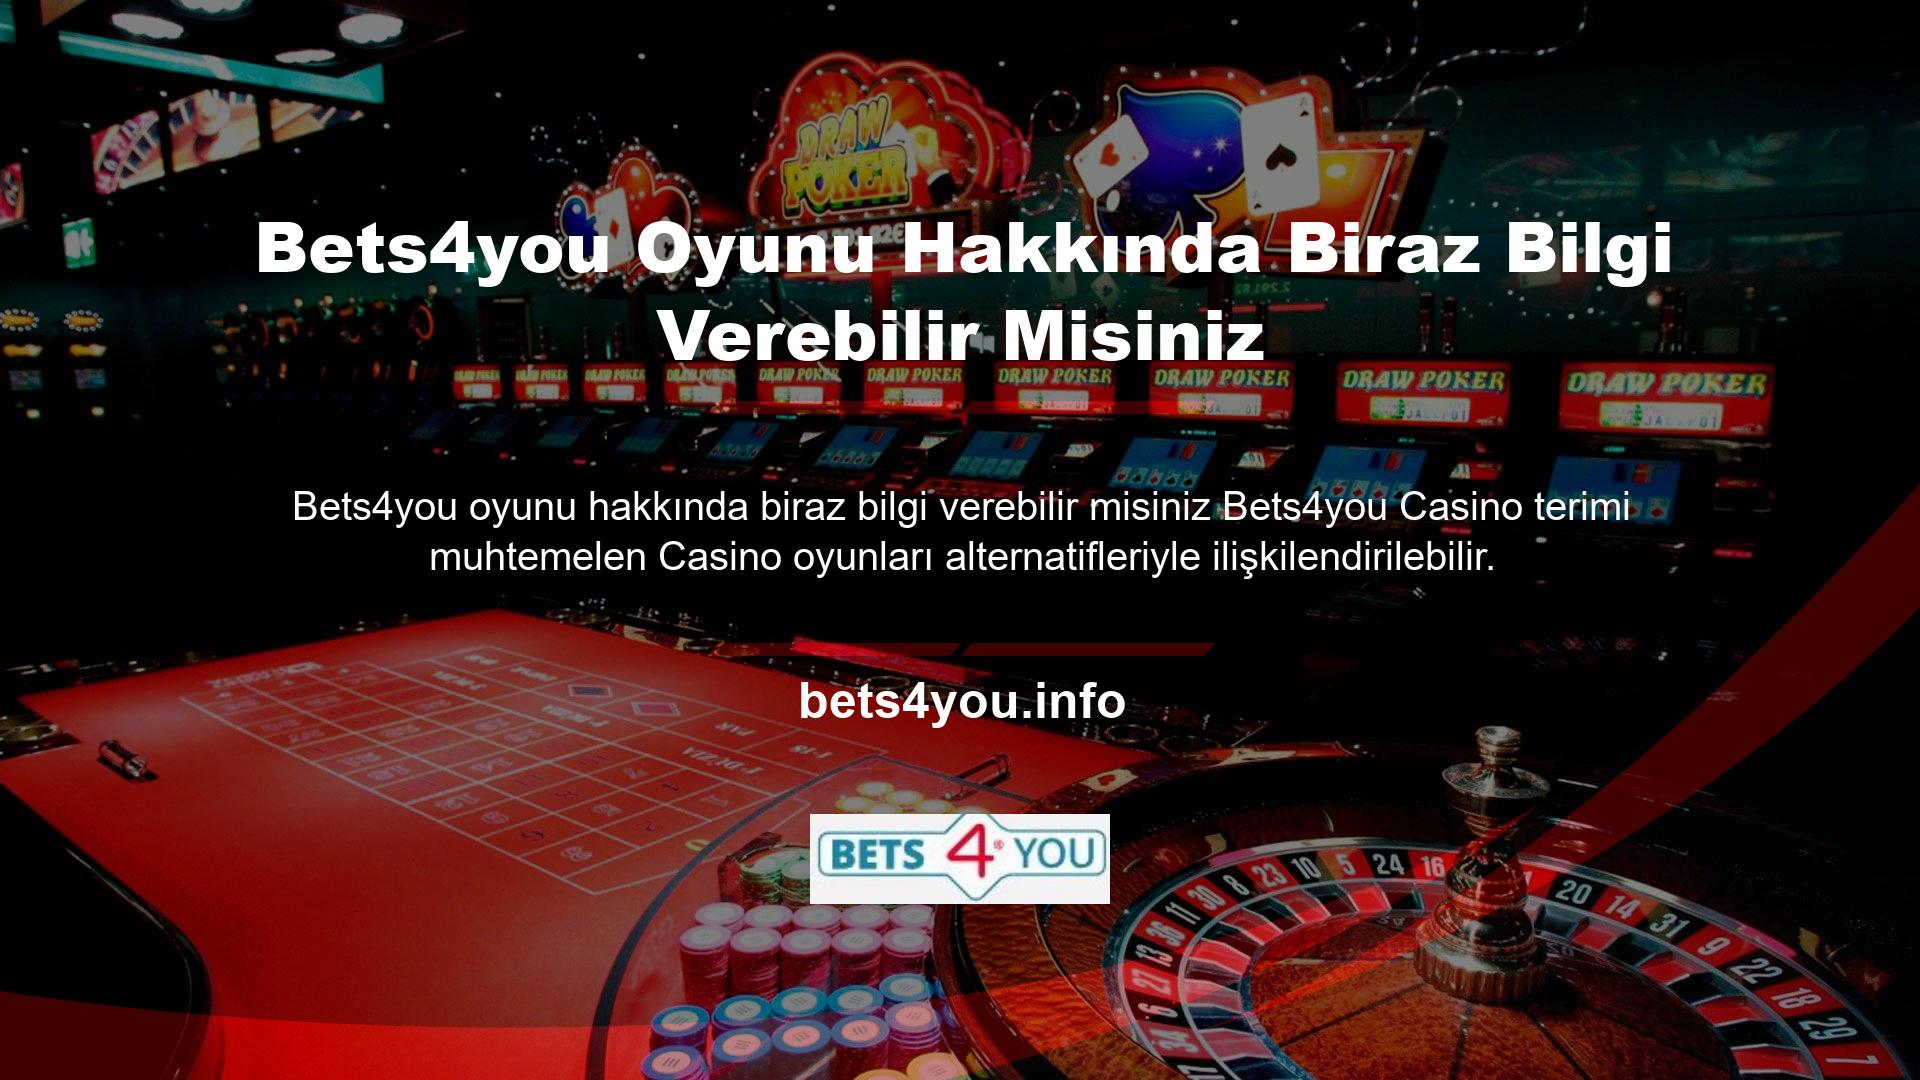 Casino terimi, piyasadaki slot oyunlarının alternatiflerini tanımlamak için sıklıkla kullanılır